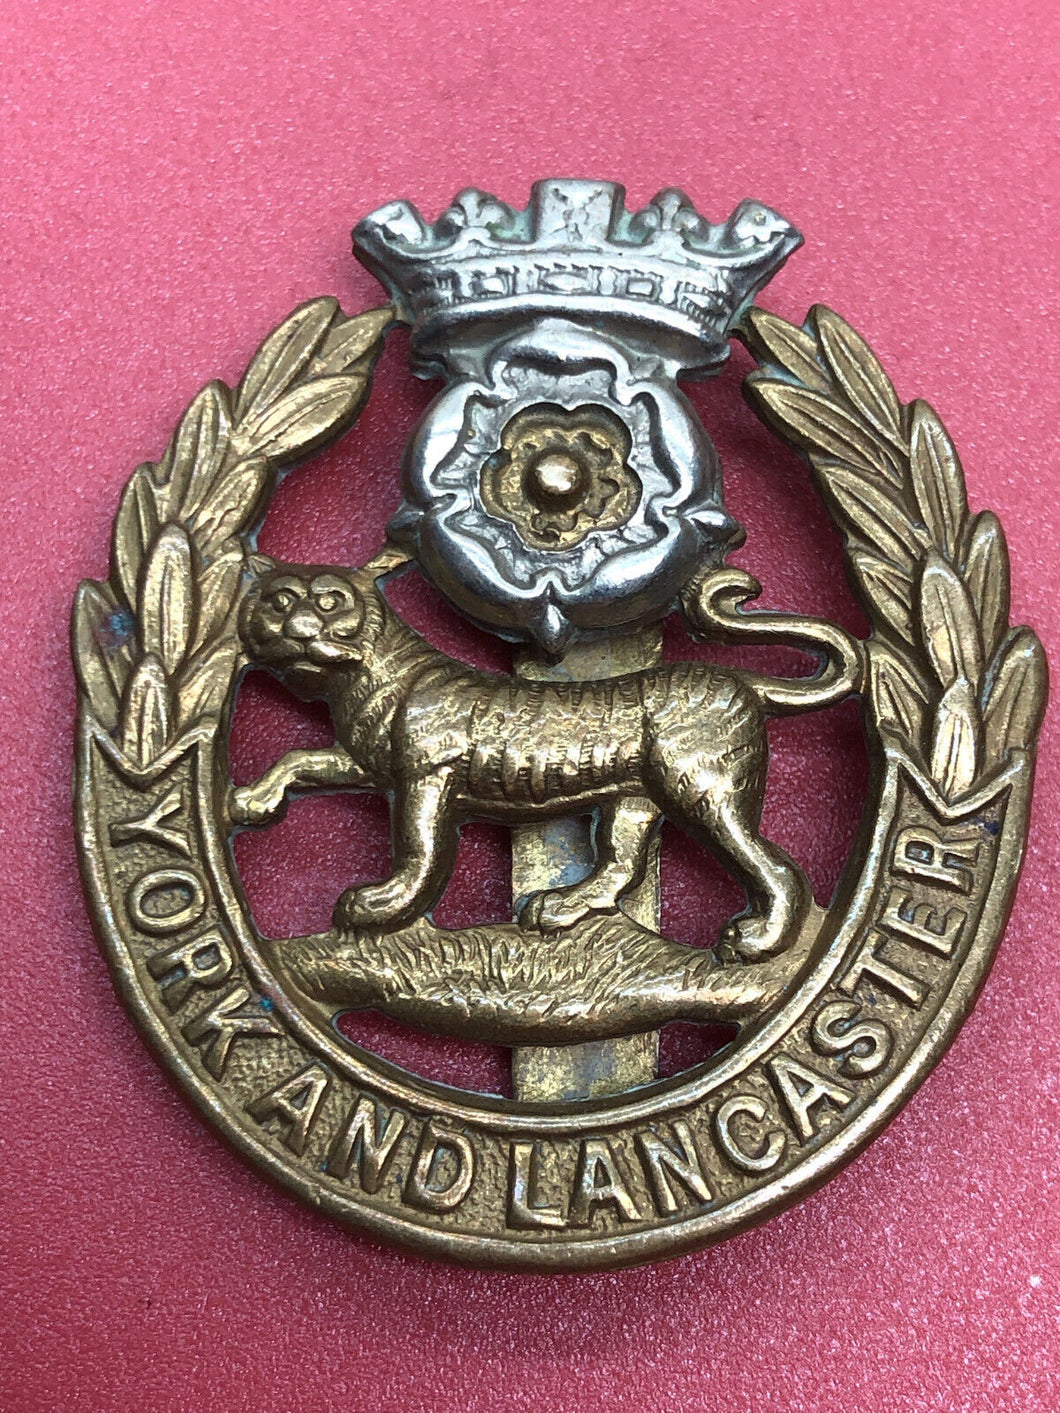 Original WW2 British Army Cap Badge - York and Lancaster Regiment